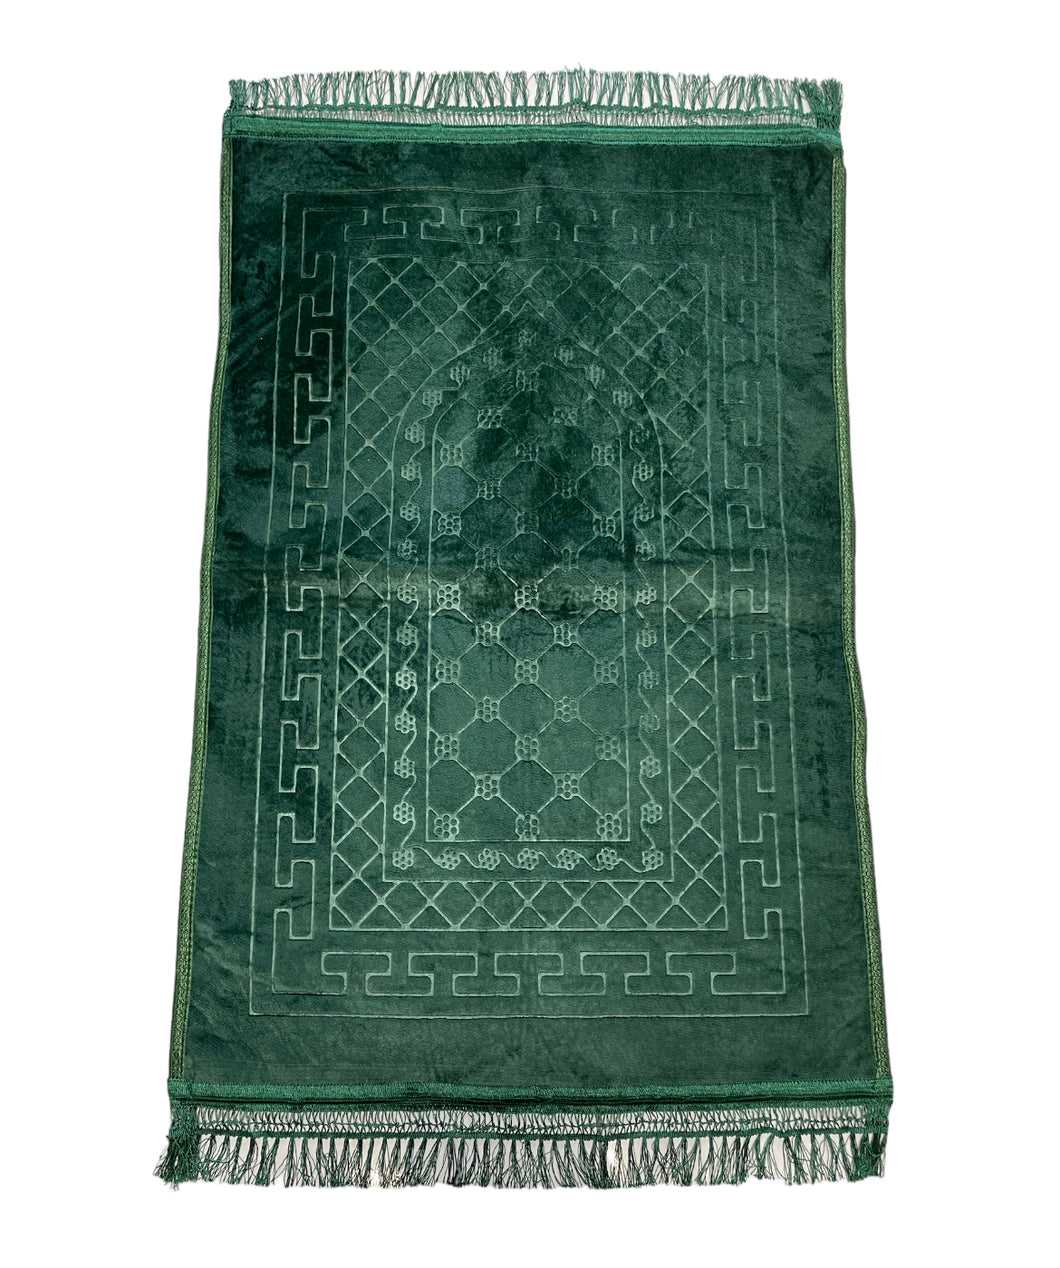 Grand Tapis de Prière -Vert- Molletonné, Épais et Très Doux - Confortable et Anti-Dérapant